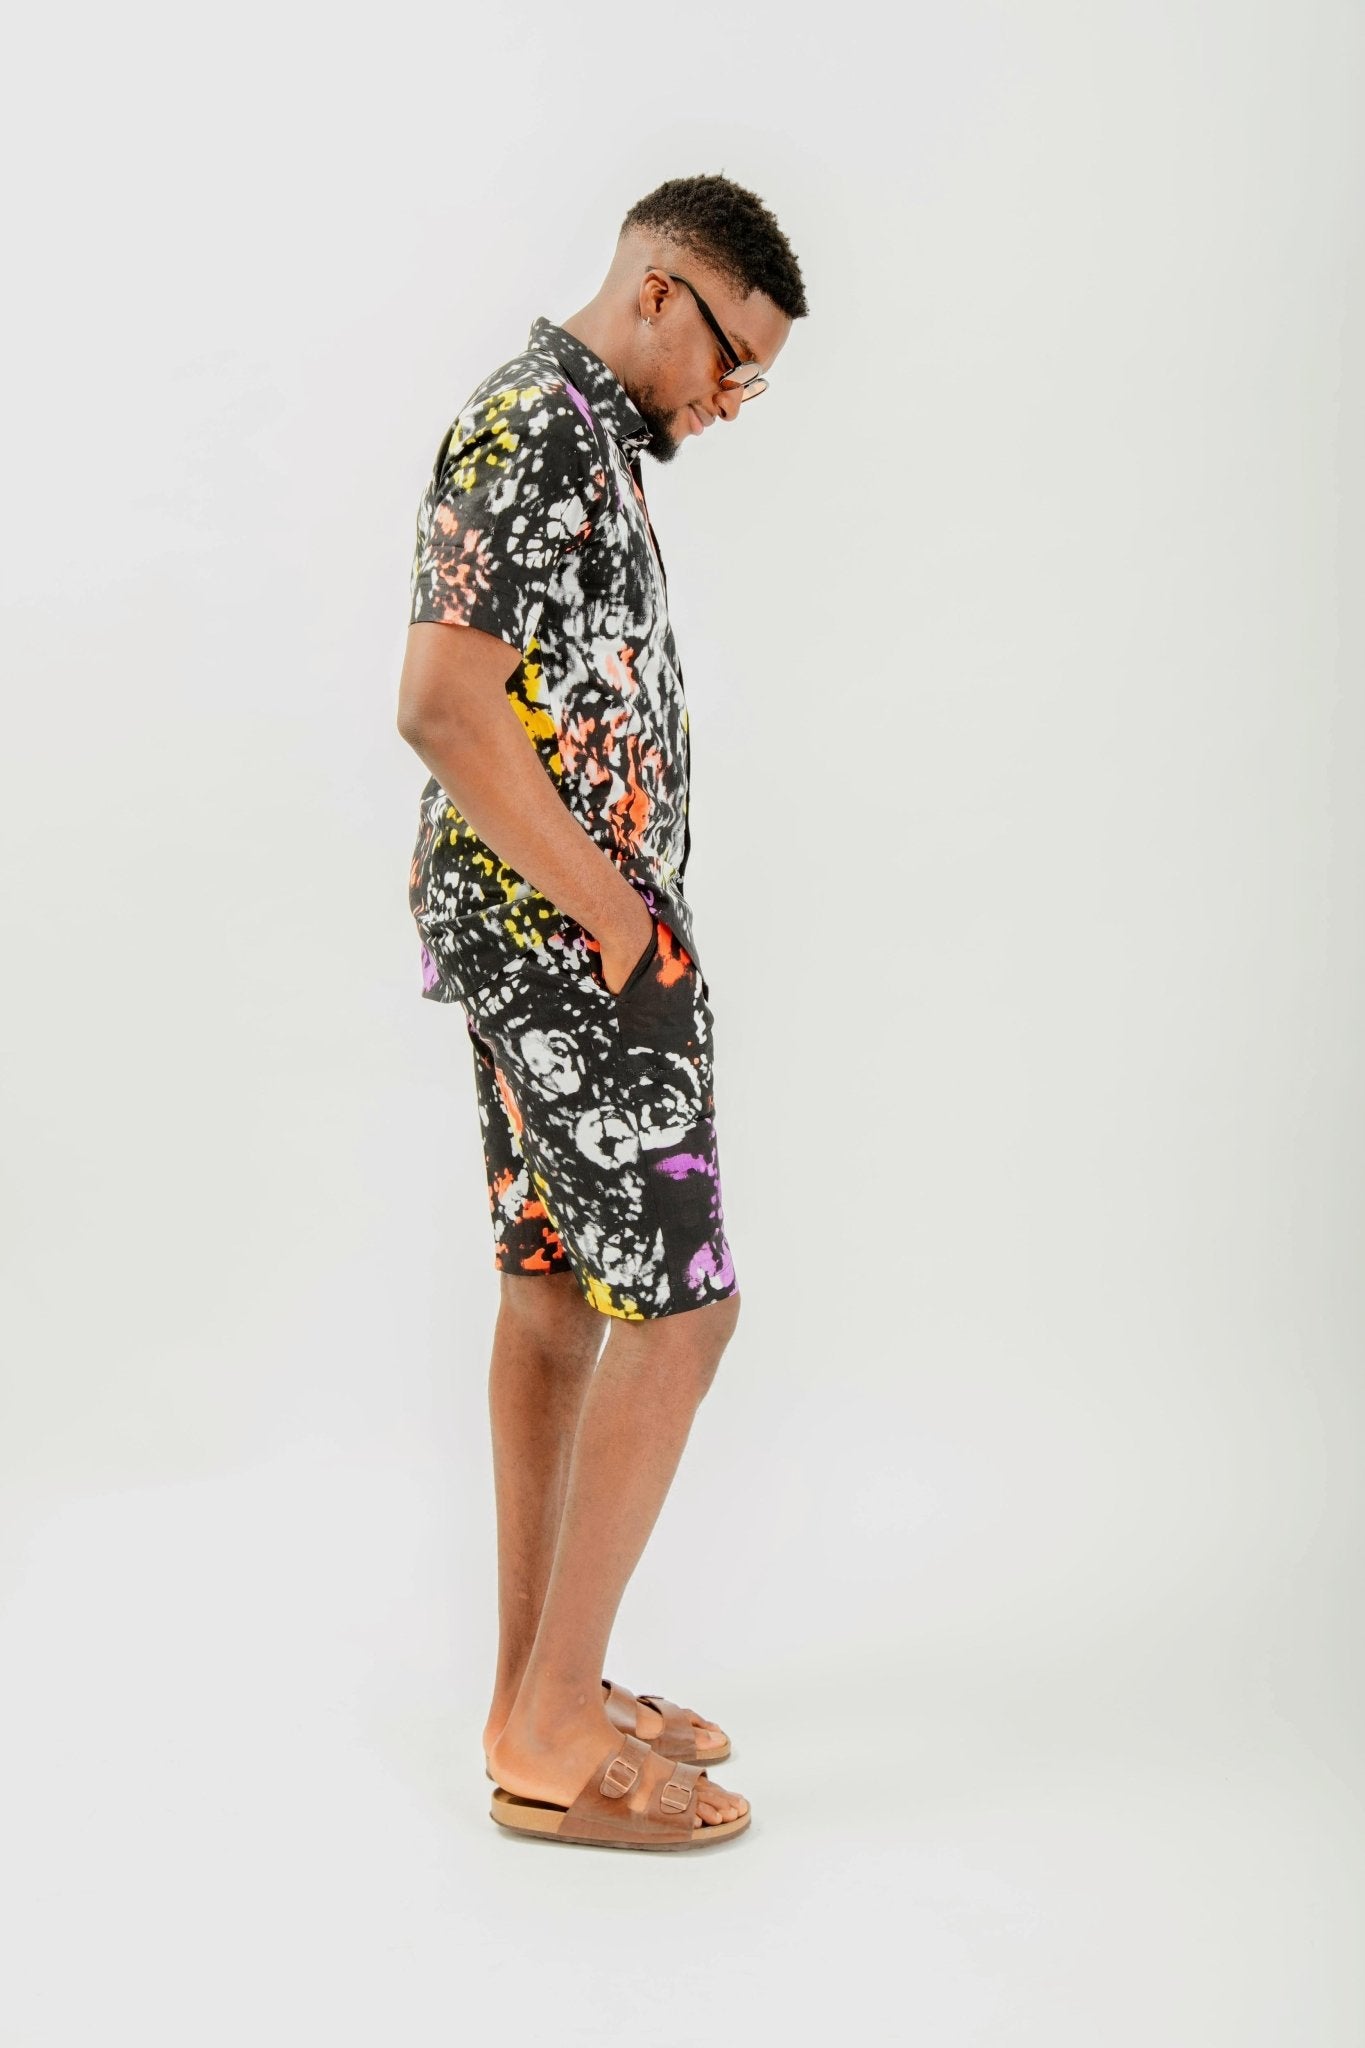 Doundounba - African Print Shirt & shorts Set - Zee Store